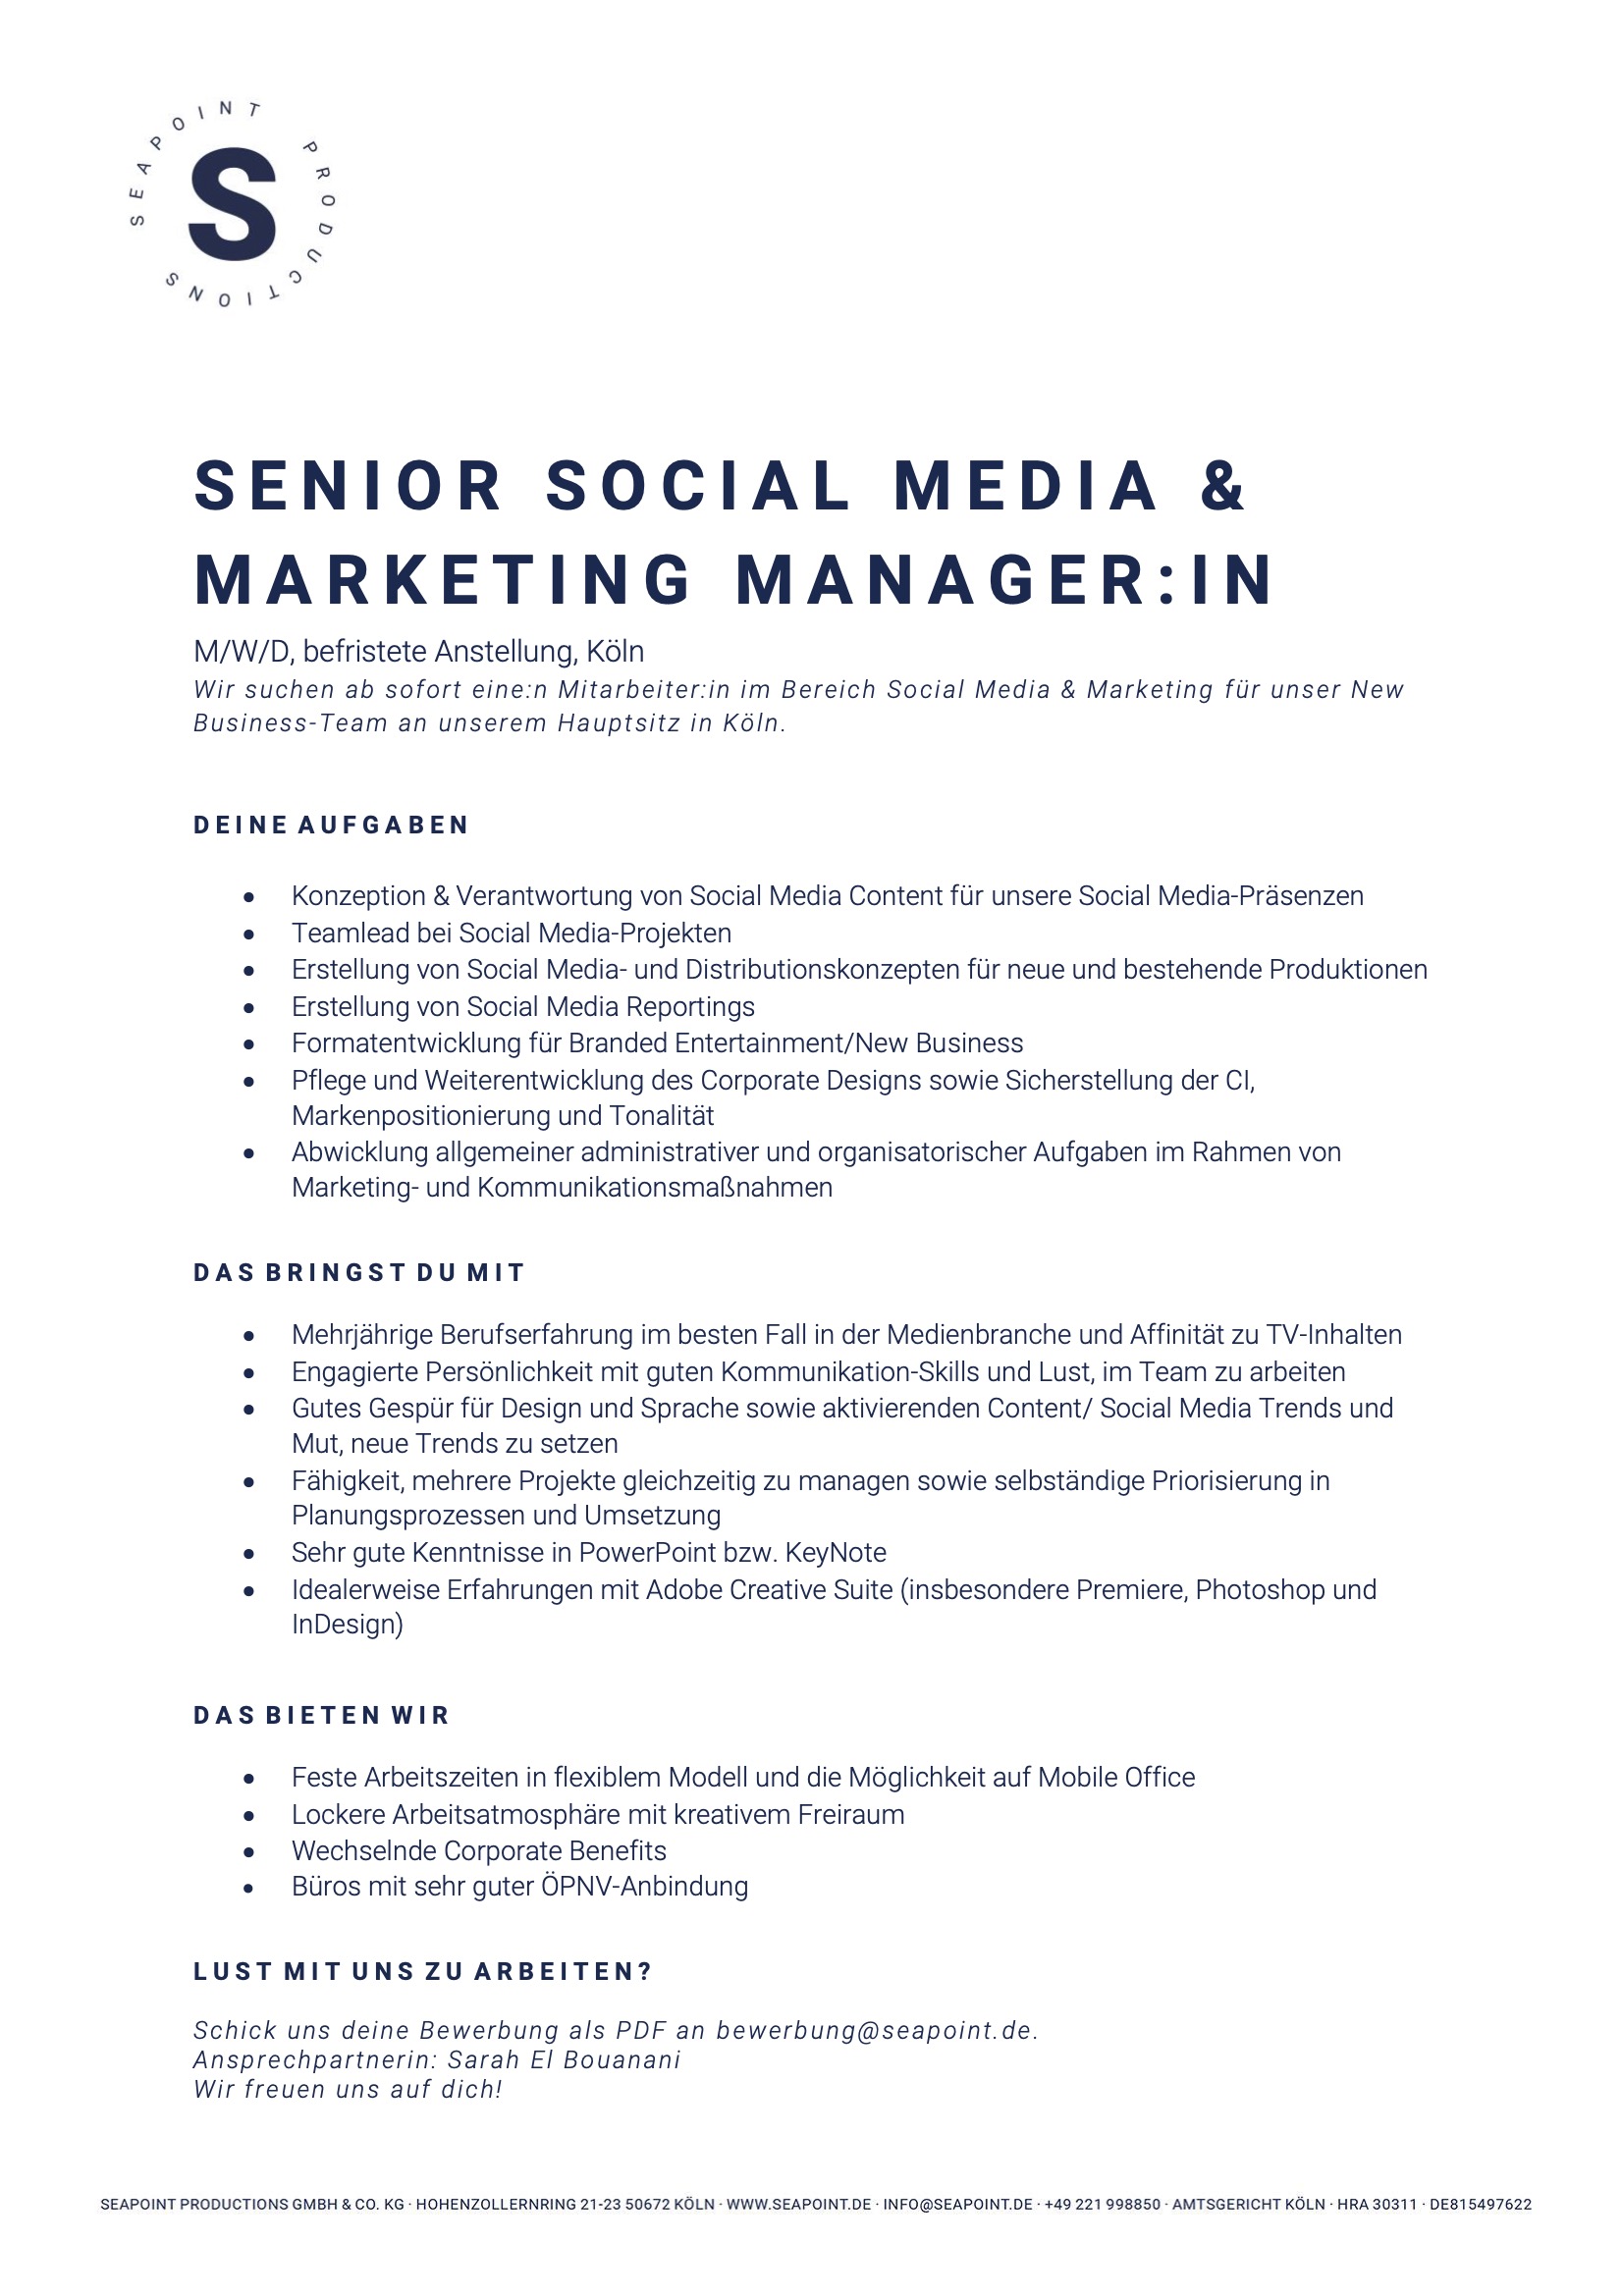 Senior Social Media & Marketing Manager:in